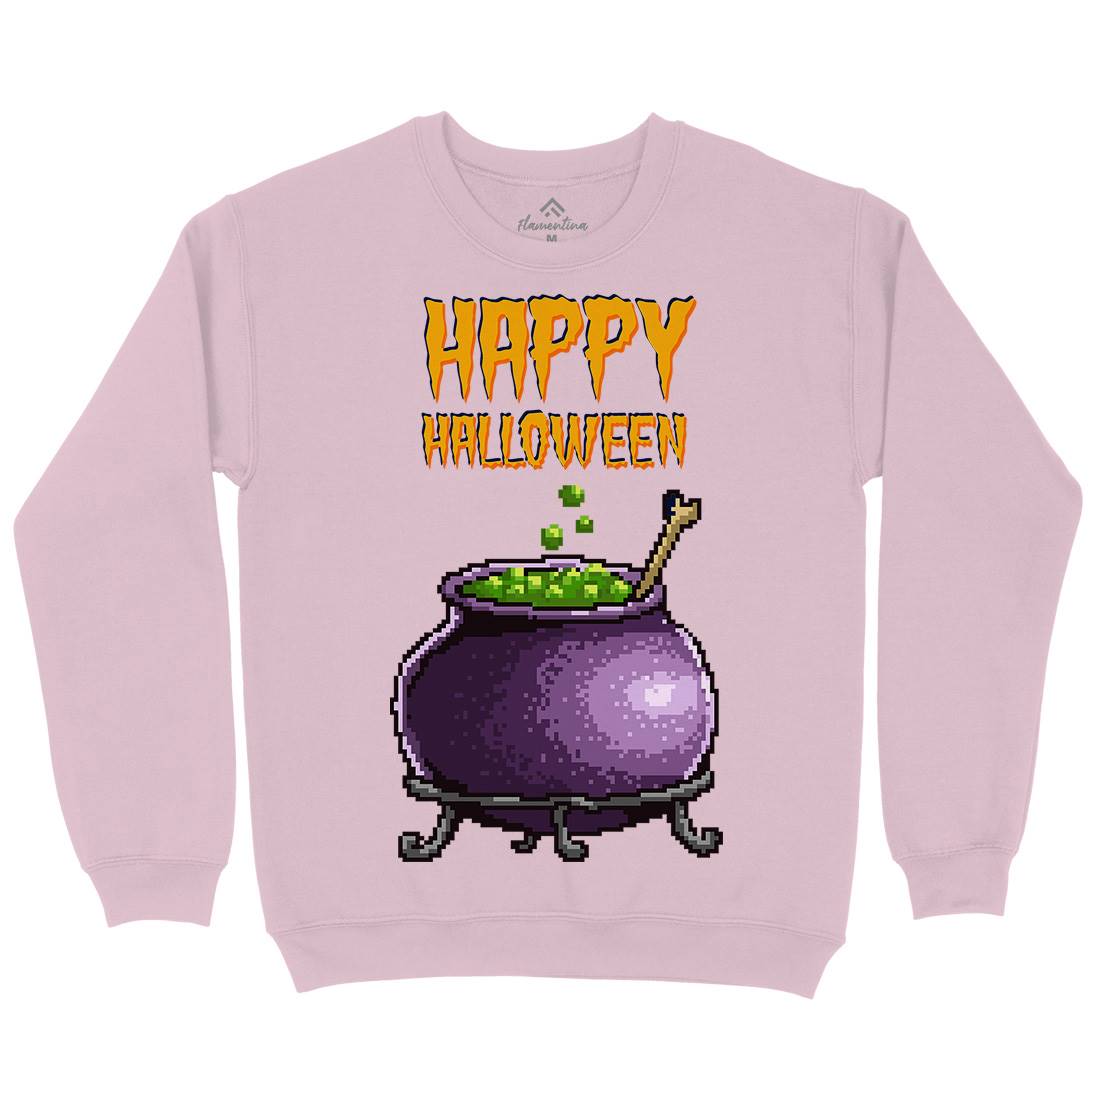 Happy Halloween Kids Crew Neck Sweatshirt Horror B909